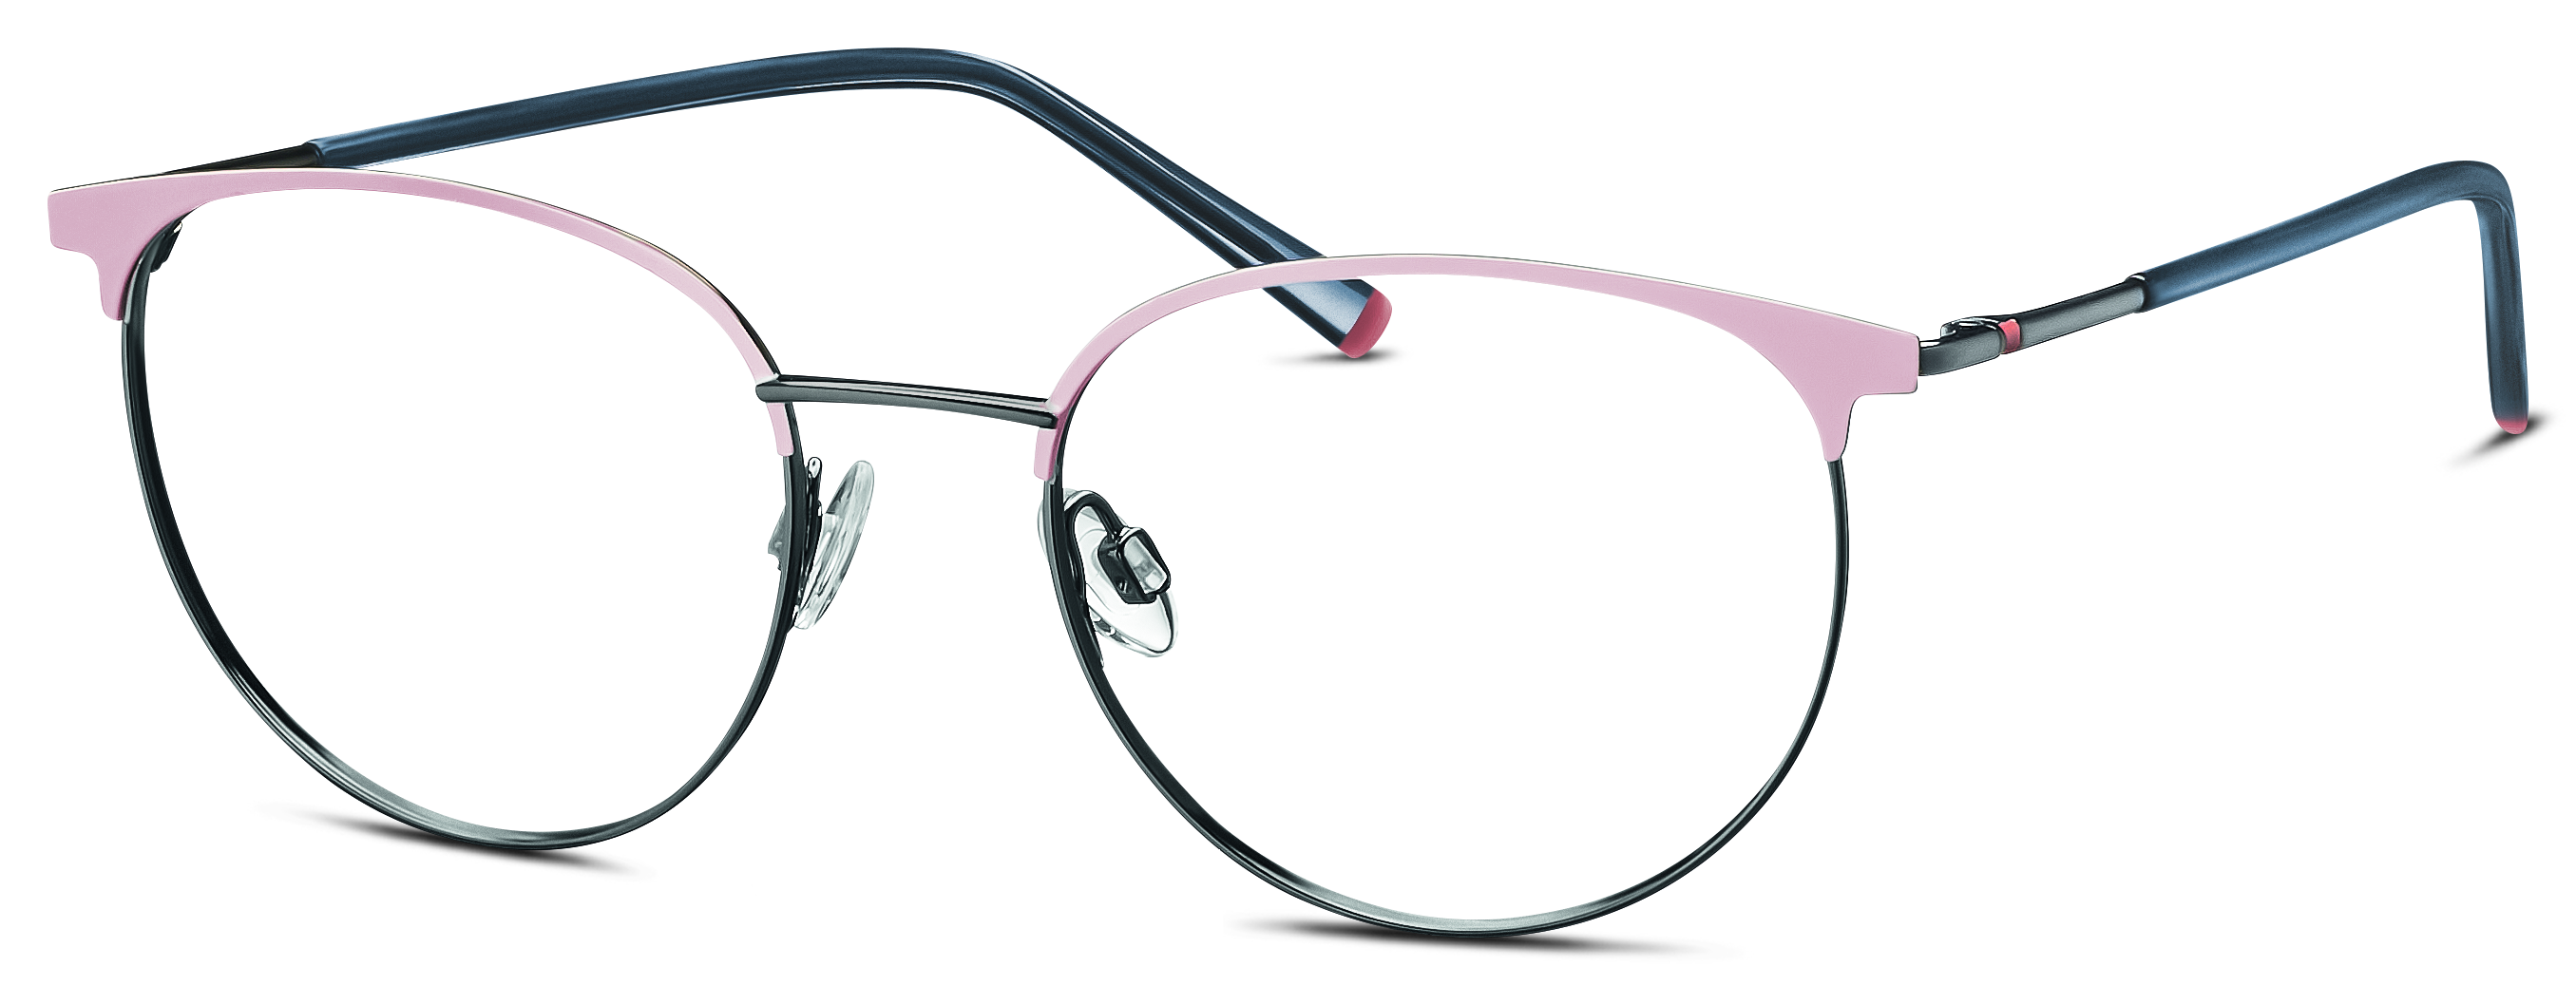 Das Bild zeigt die Korrektionsbrille 582313 50 von der Marke Humphreys in rosa.